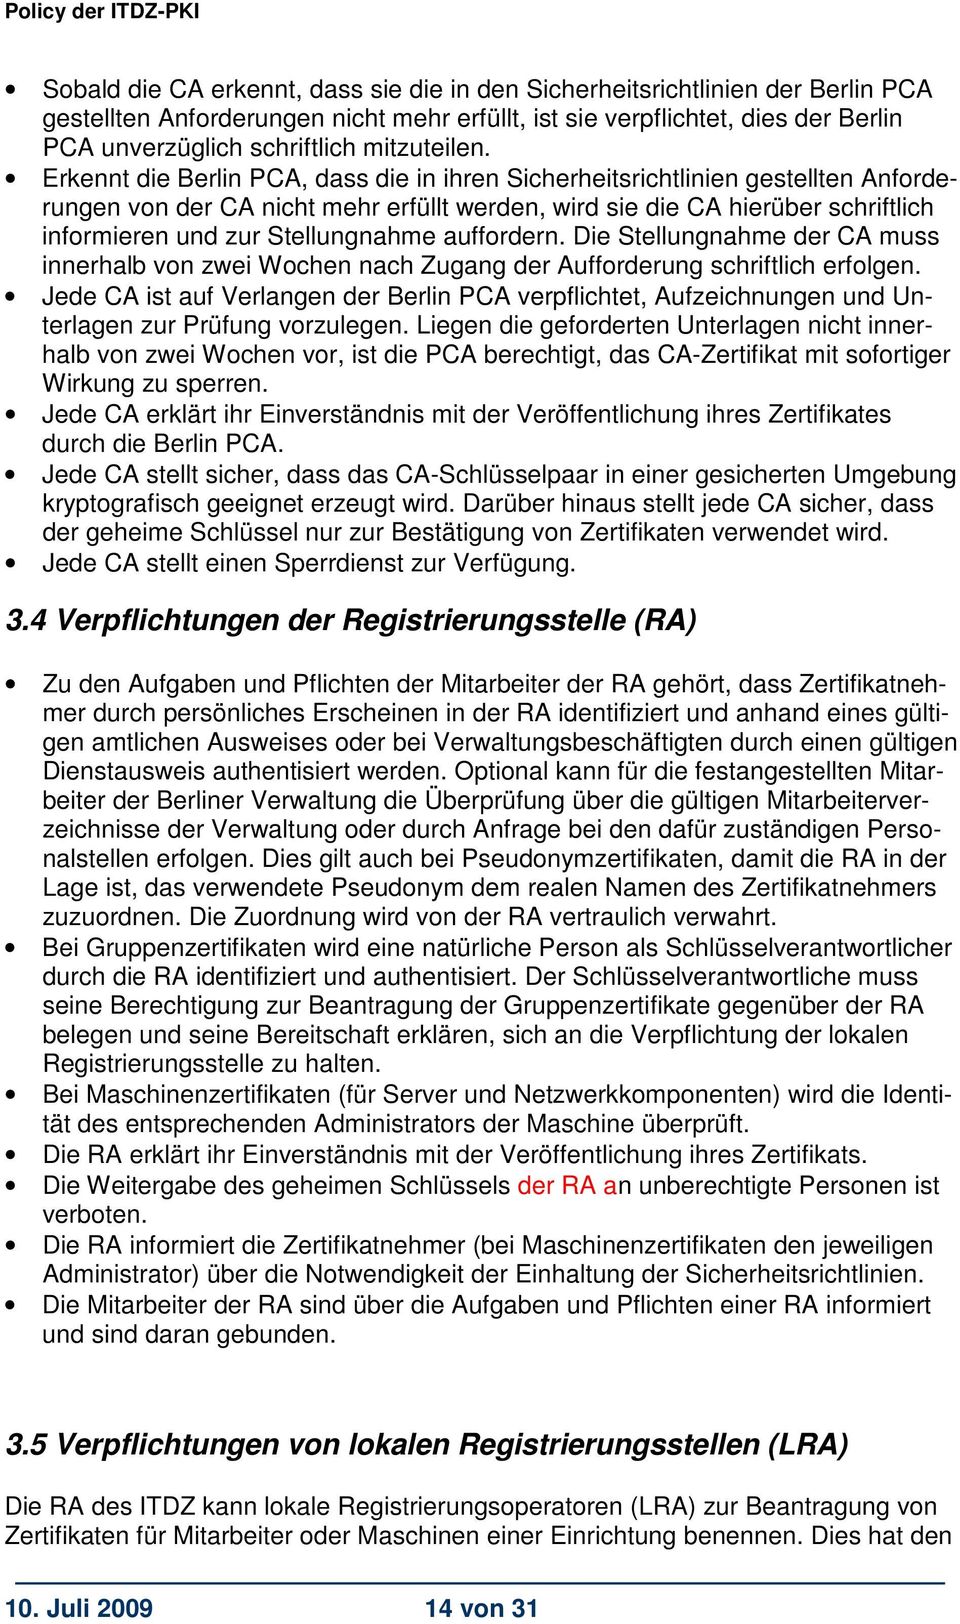 Erkennt die Berlin PCA, dass die in ihren Sicherheitsrichtlinien gestellten Anforderungen von der CA nicht mehr erfüllt werden, wird sie die CA hierüber schriftlich informieren und zur Stellungnahme